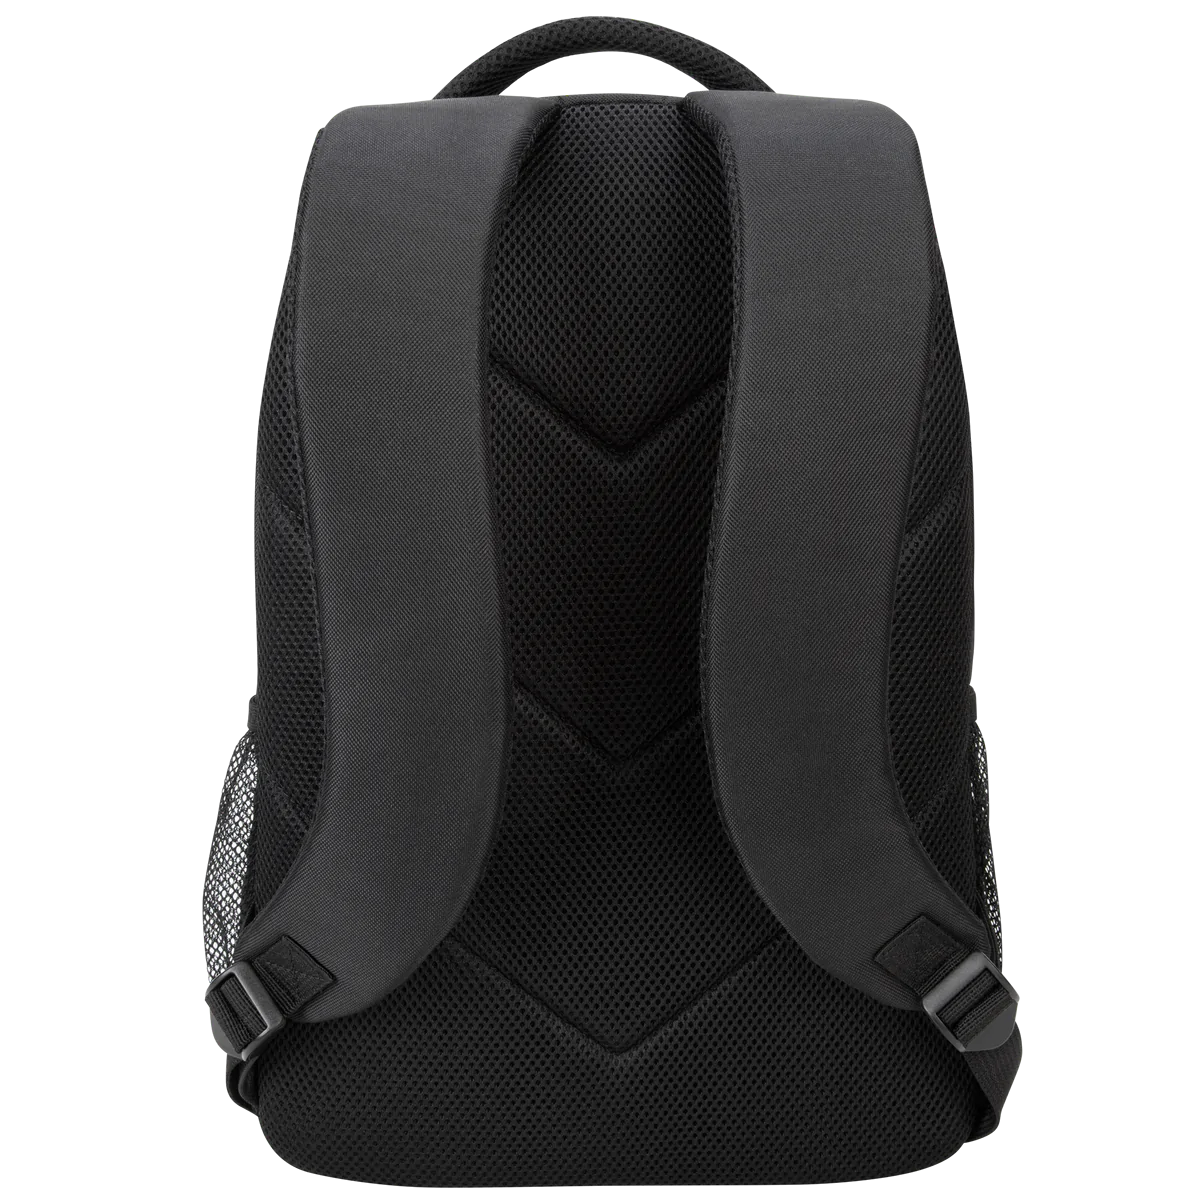 Balo Laptop Targus 15.6 inch Sport Backpack (Black) - Hàng chính hãng